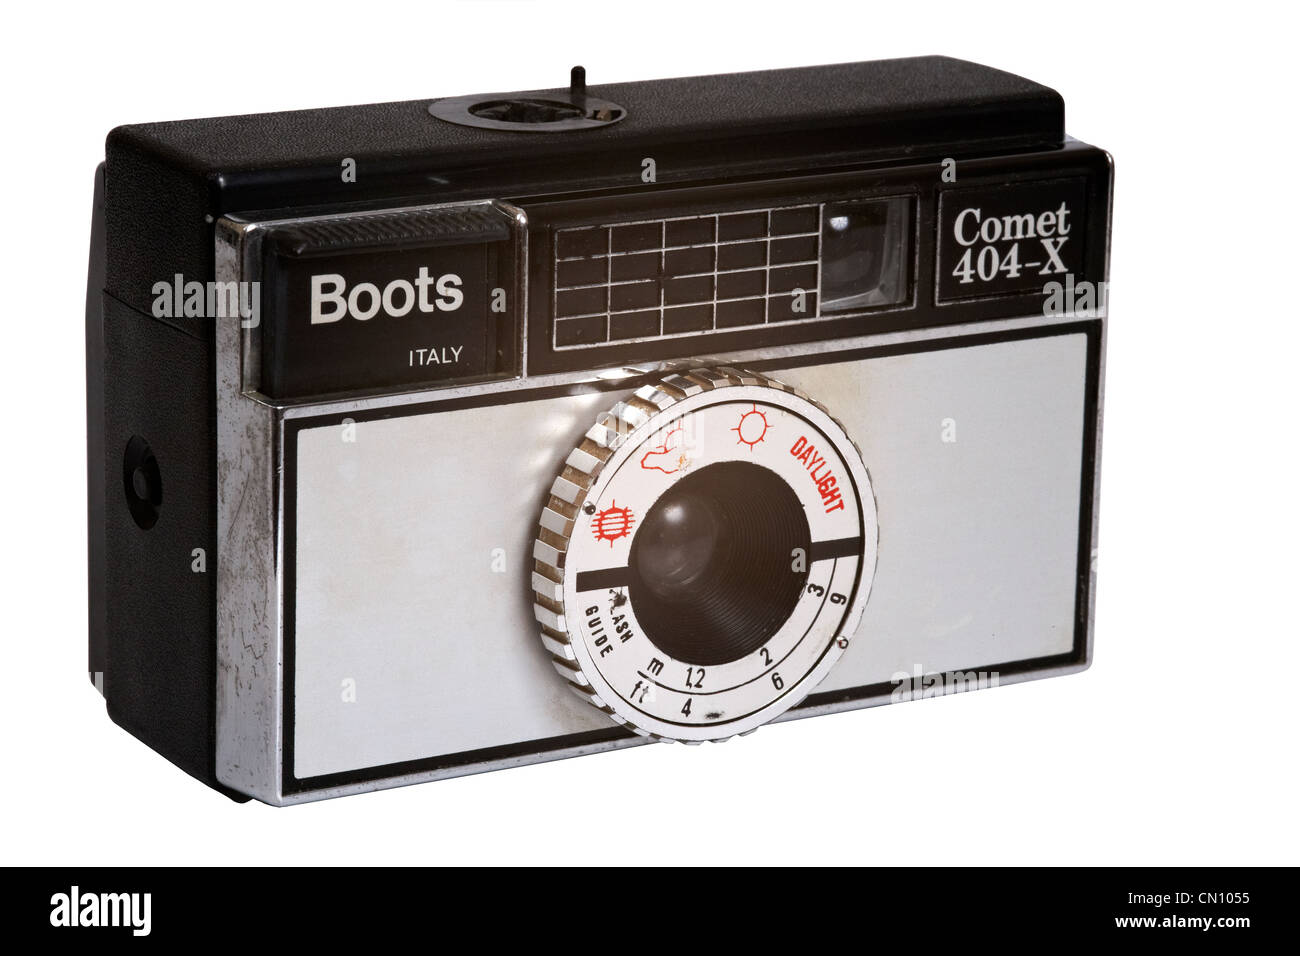 Tagliare fuori da un Kodak fotocamera instamatic sotto il nome di marca stivali, made in Italy Foto Stock